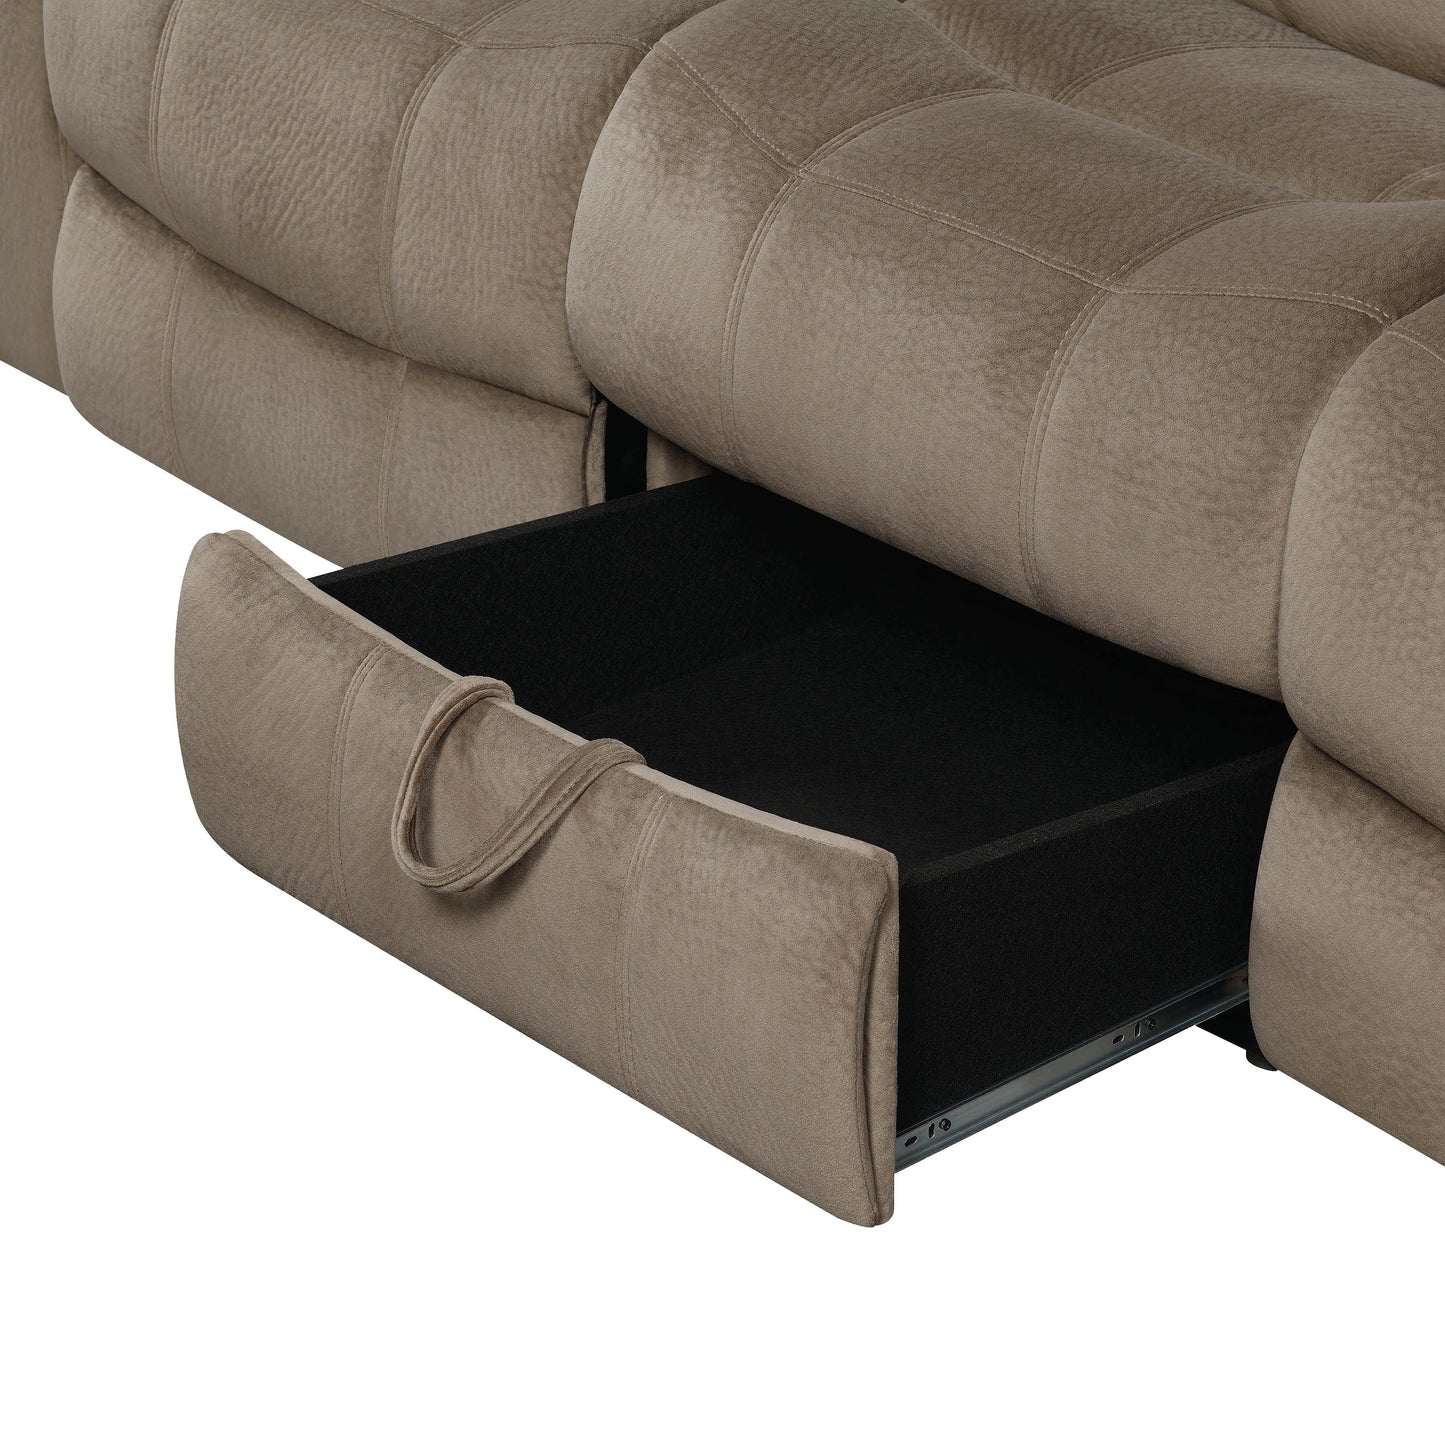 Myleene Upholstered Tufted Living Room Set Mocha - 603031